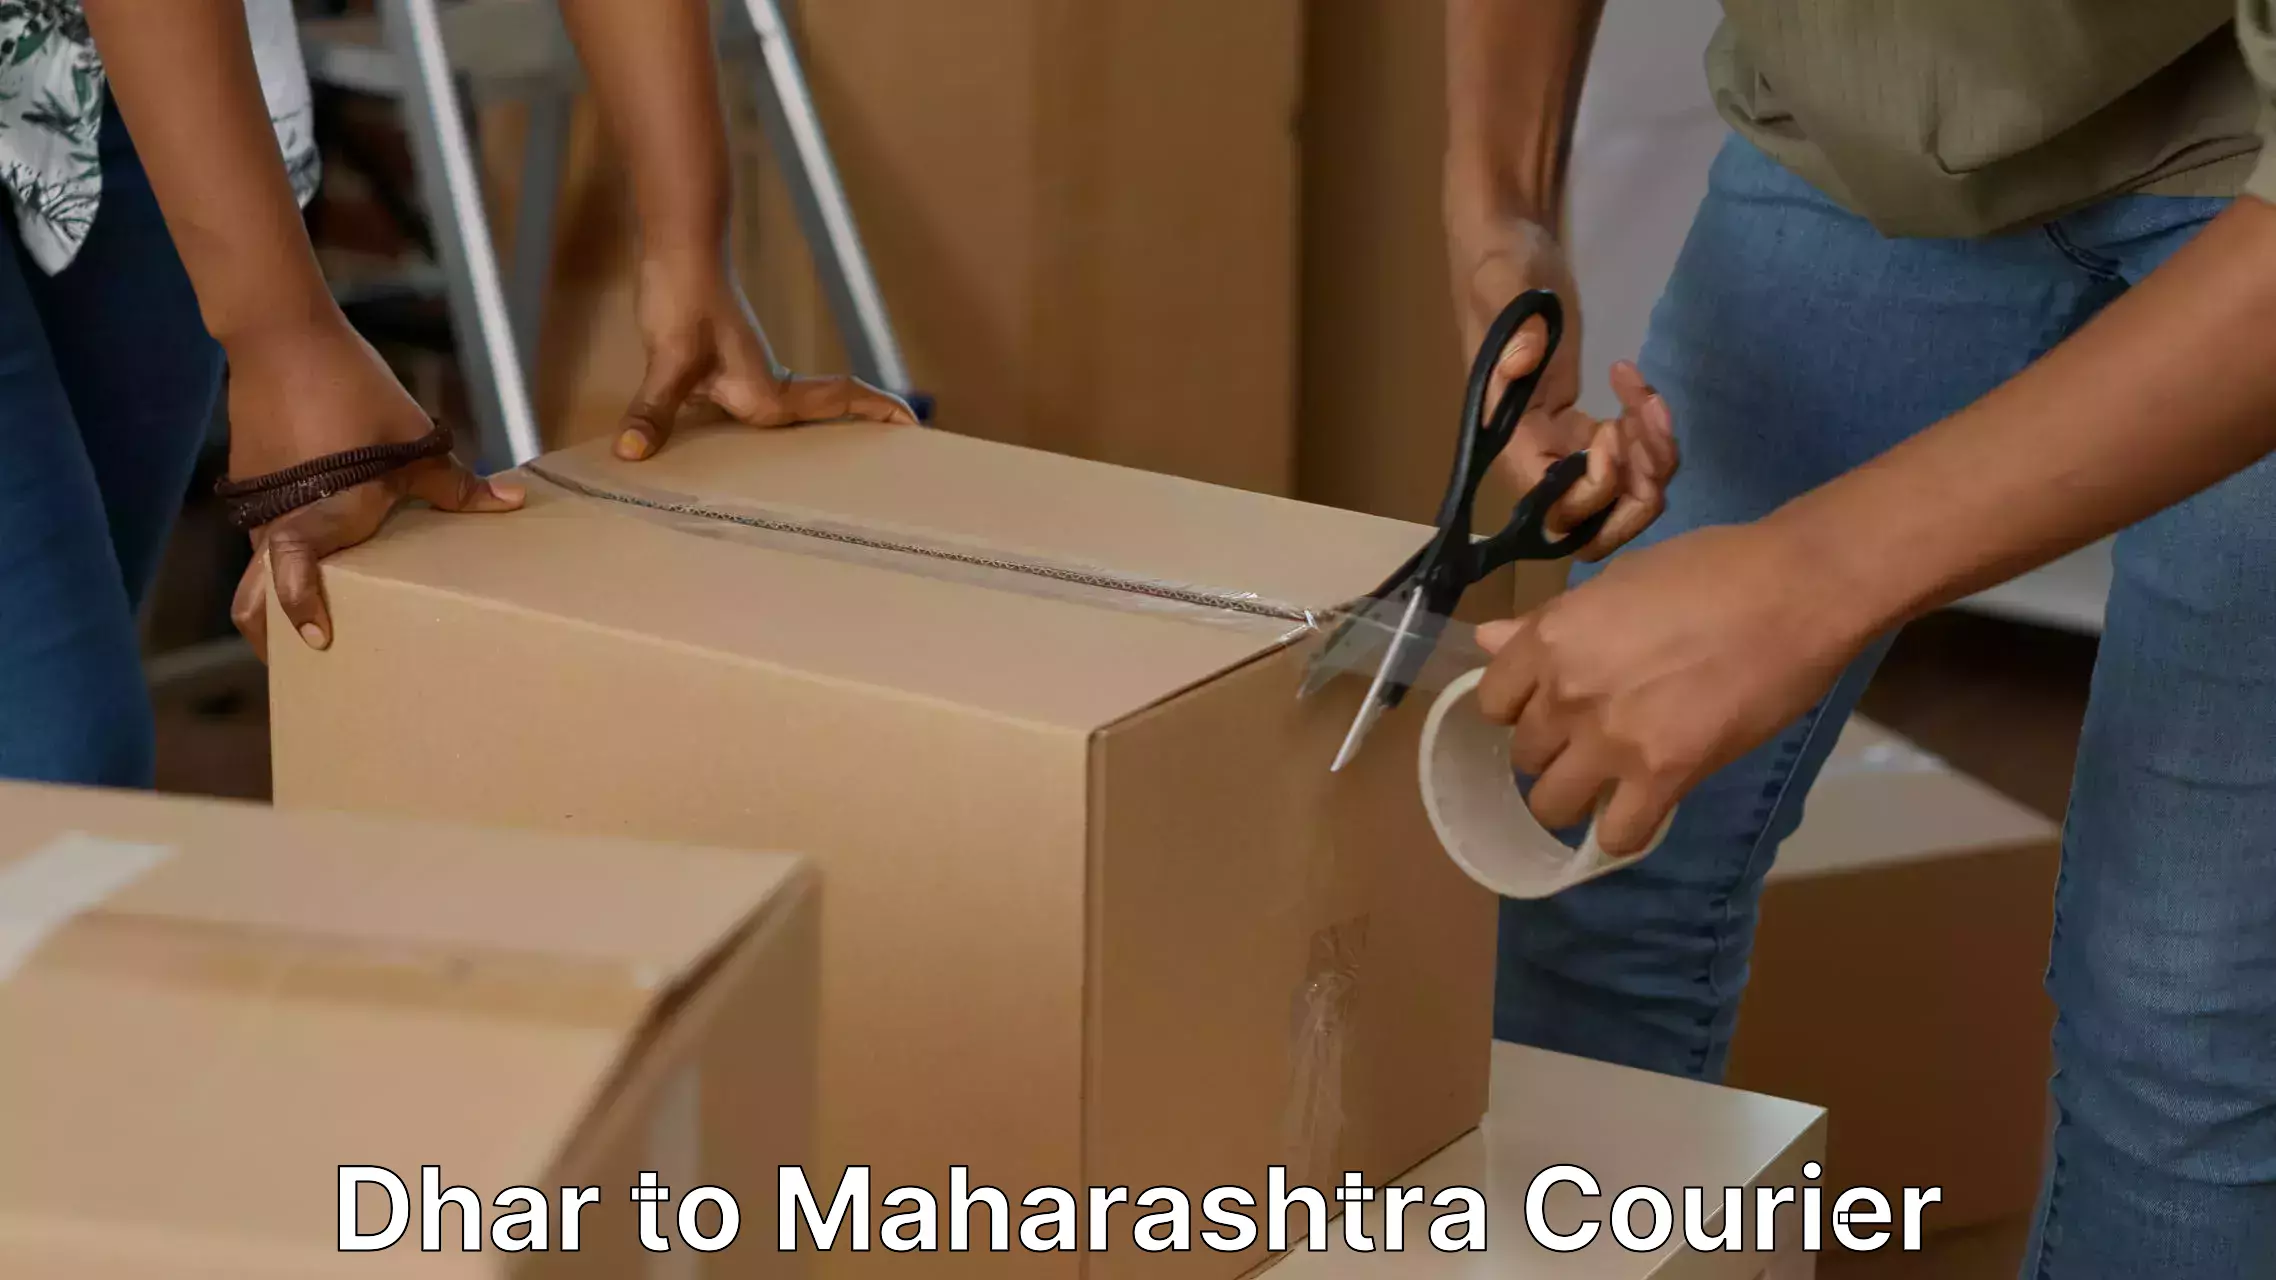 Door-to-door relocation services in Dhar to Maharashtra